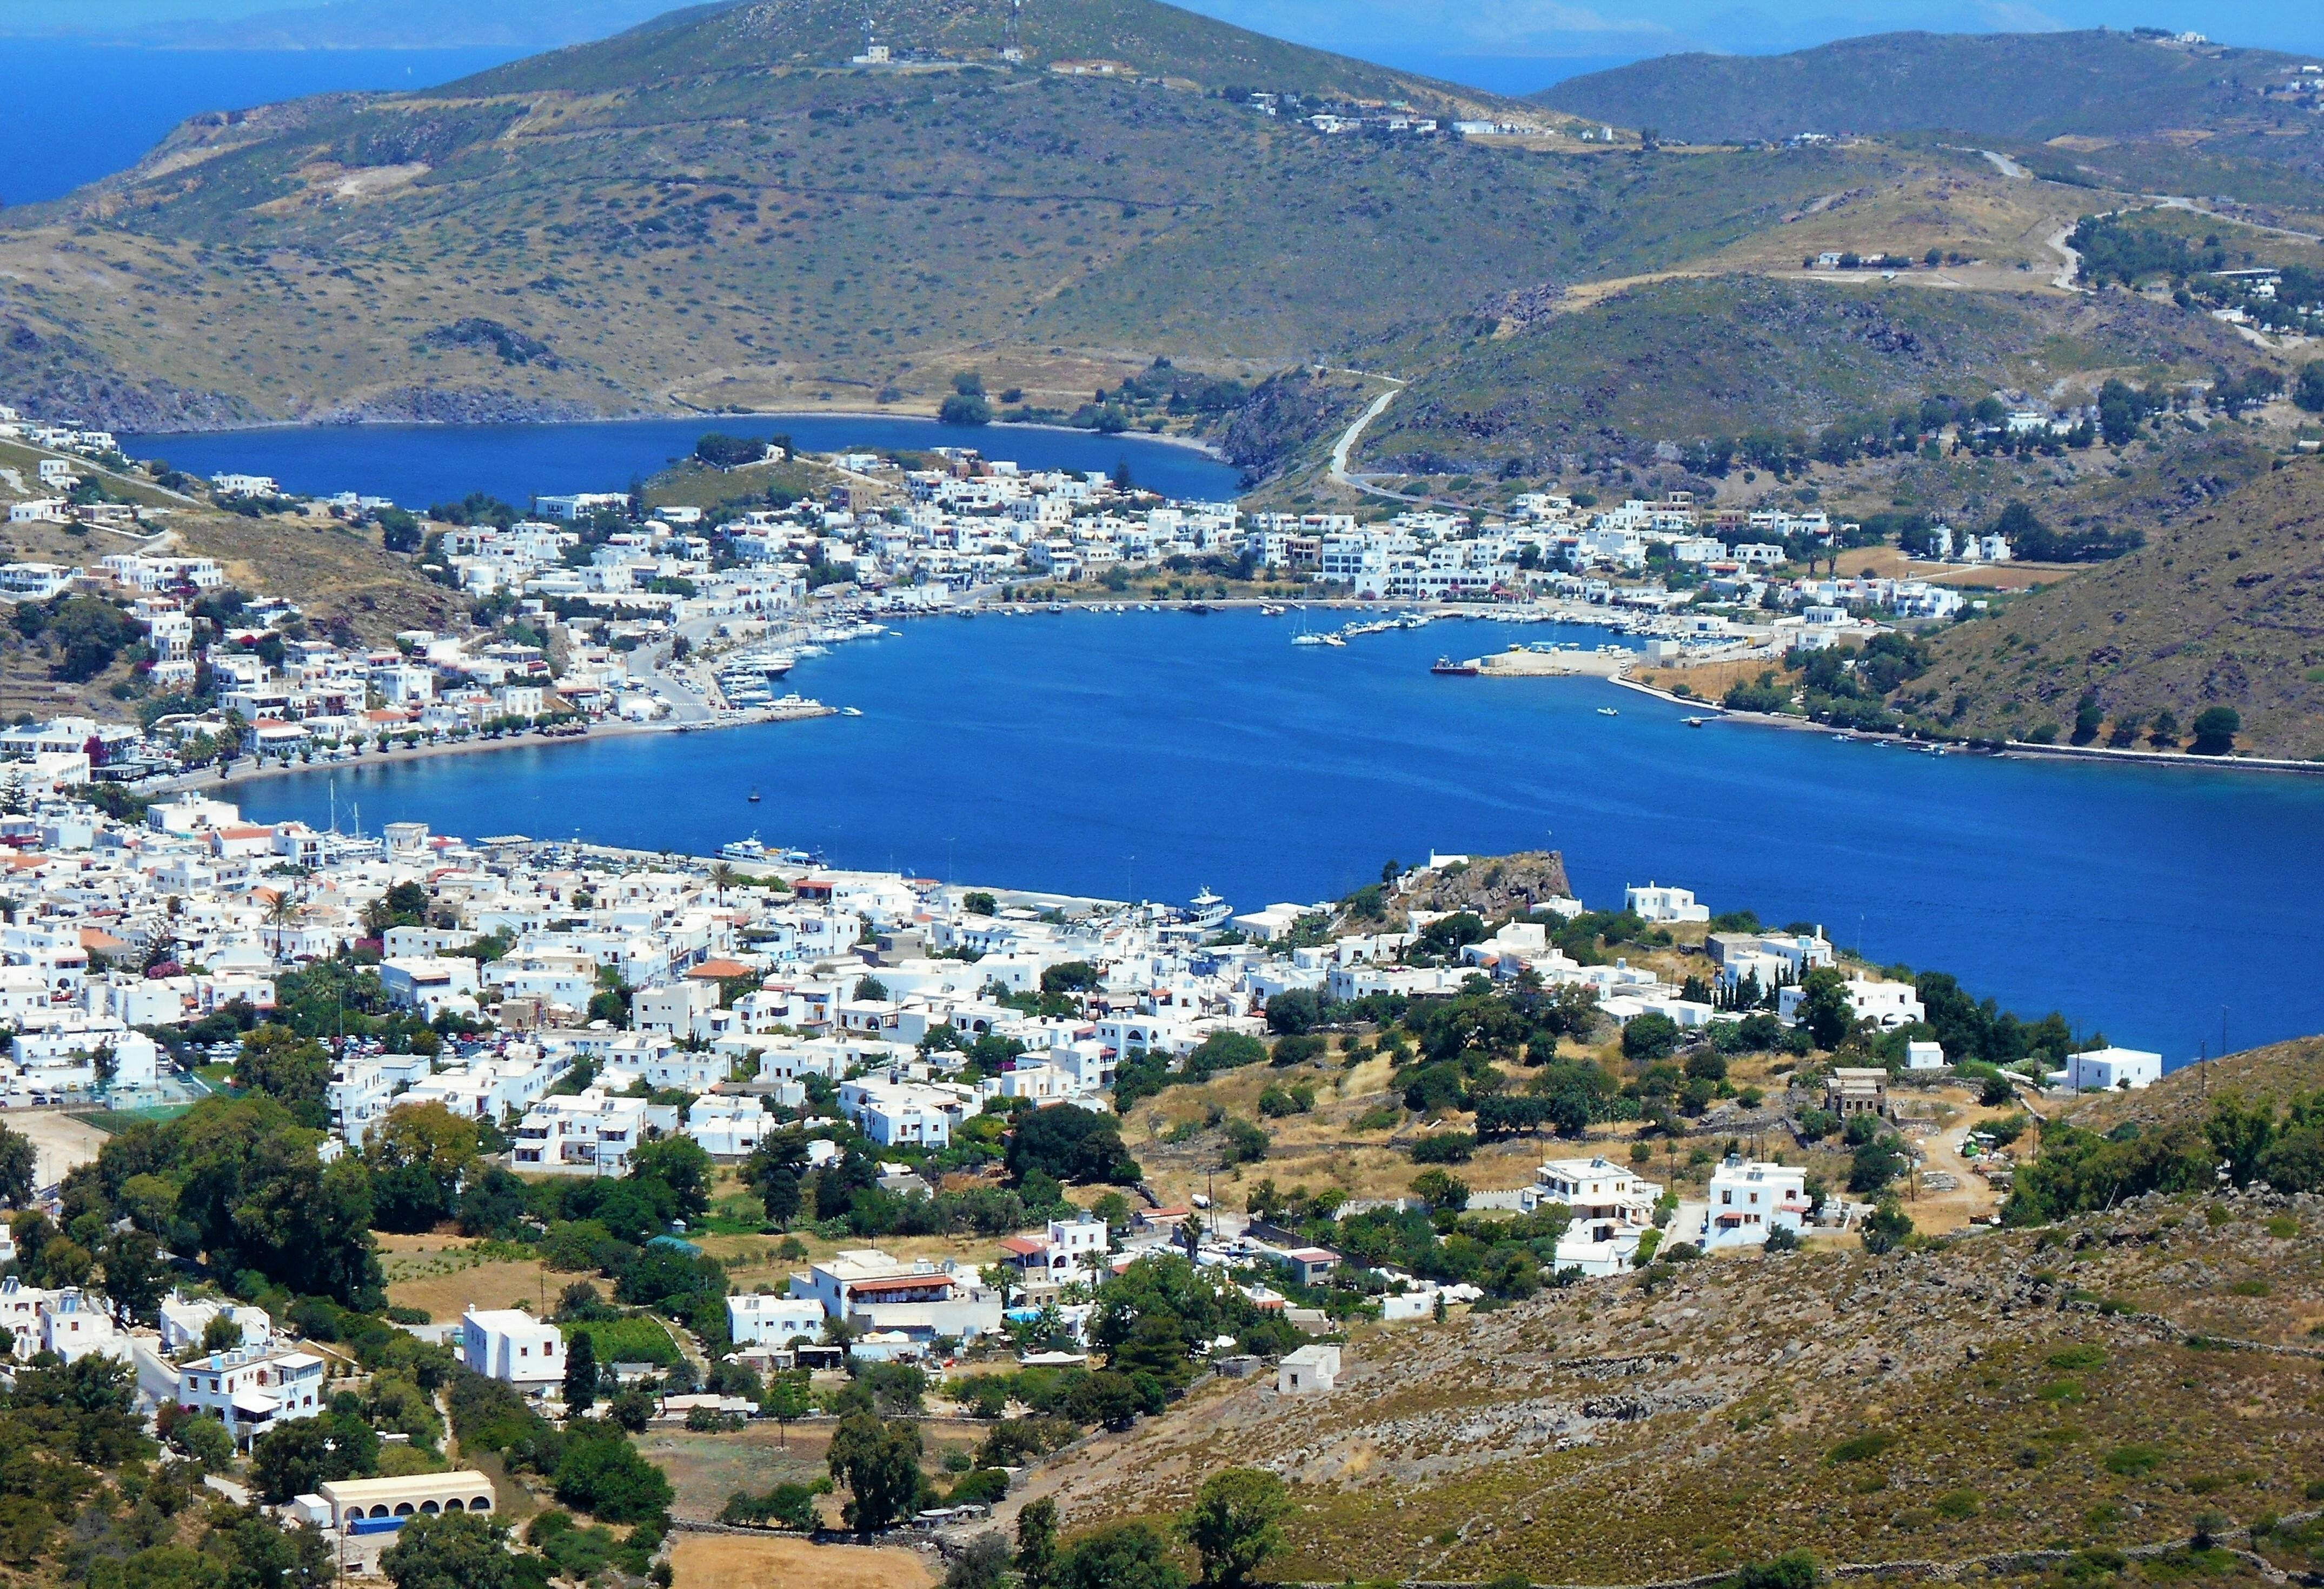 Discover Patmos